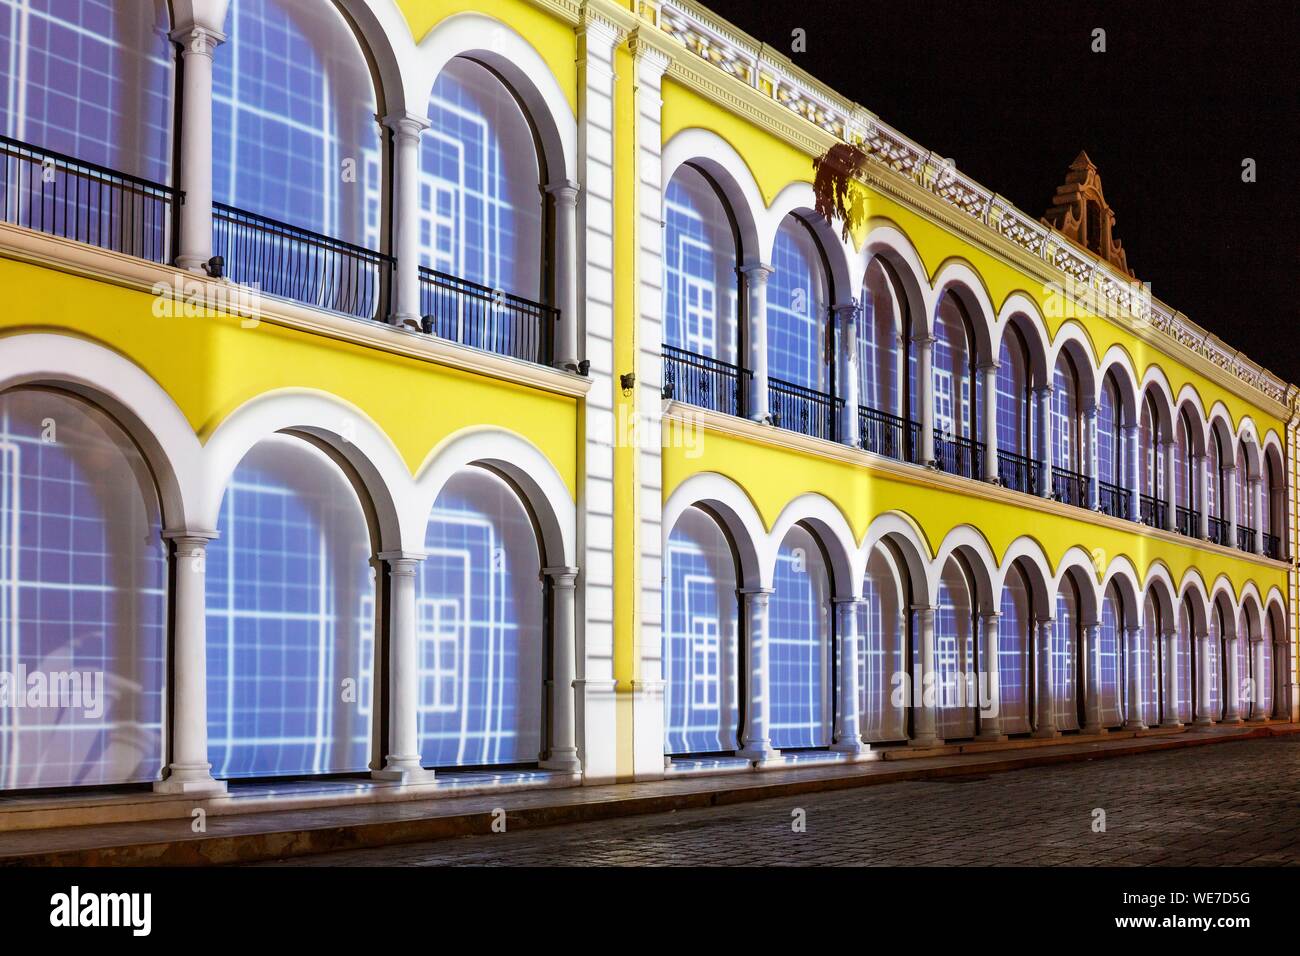 México, estado de Campeche, Campeche, ciudad fortificada listados como Patrimonio Mundial por la UNESCO, la fachada del ayuntamiento por la noche Foto de stock